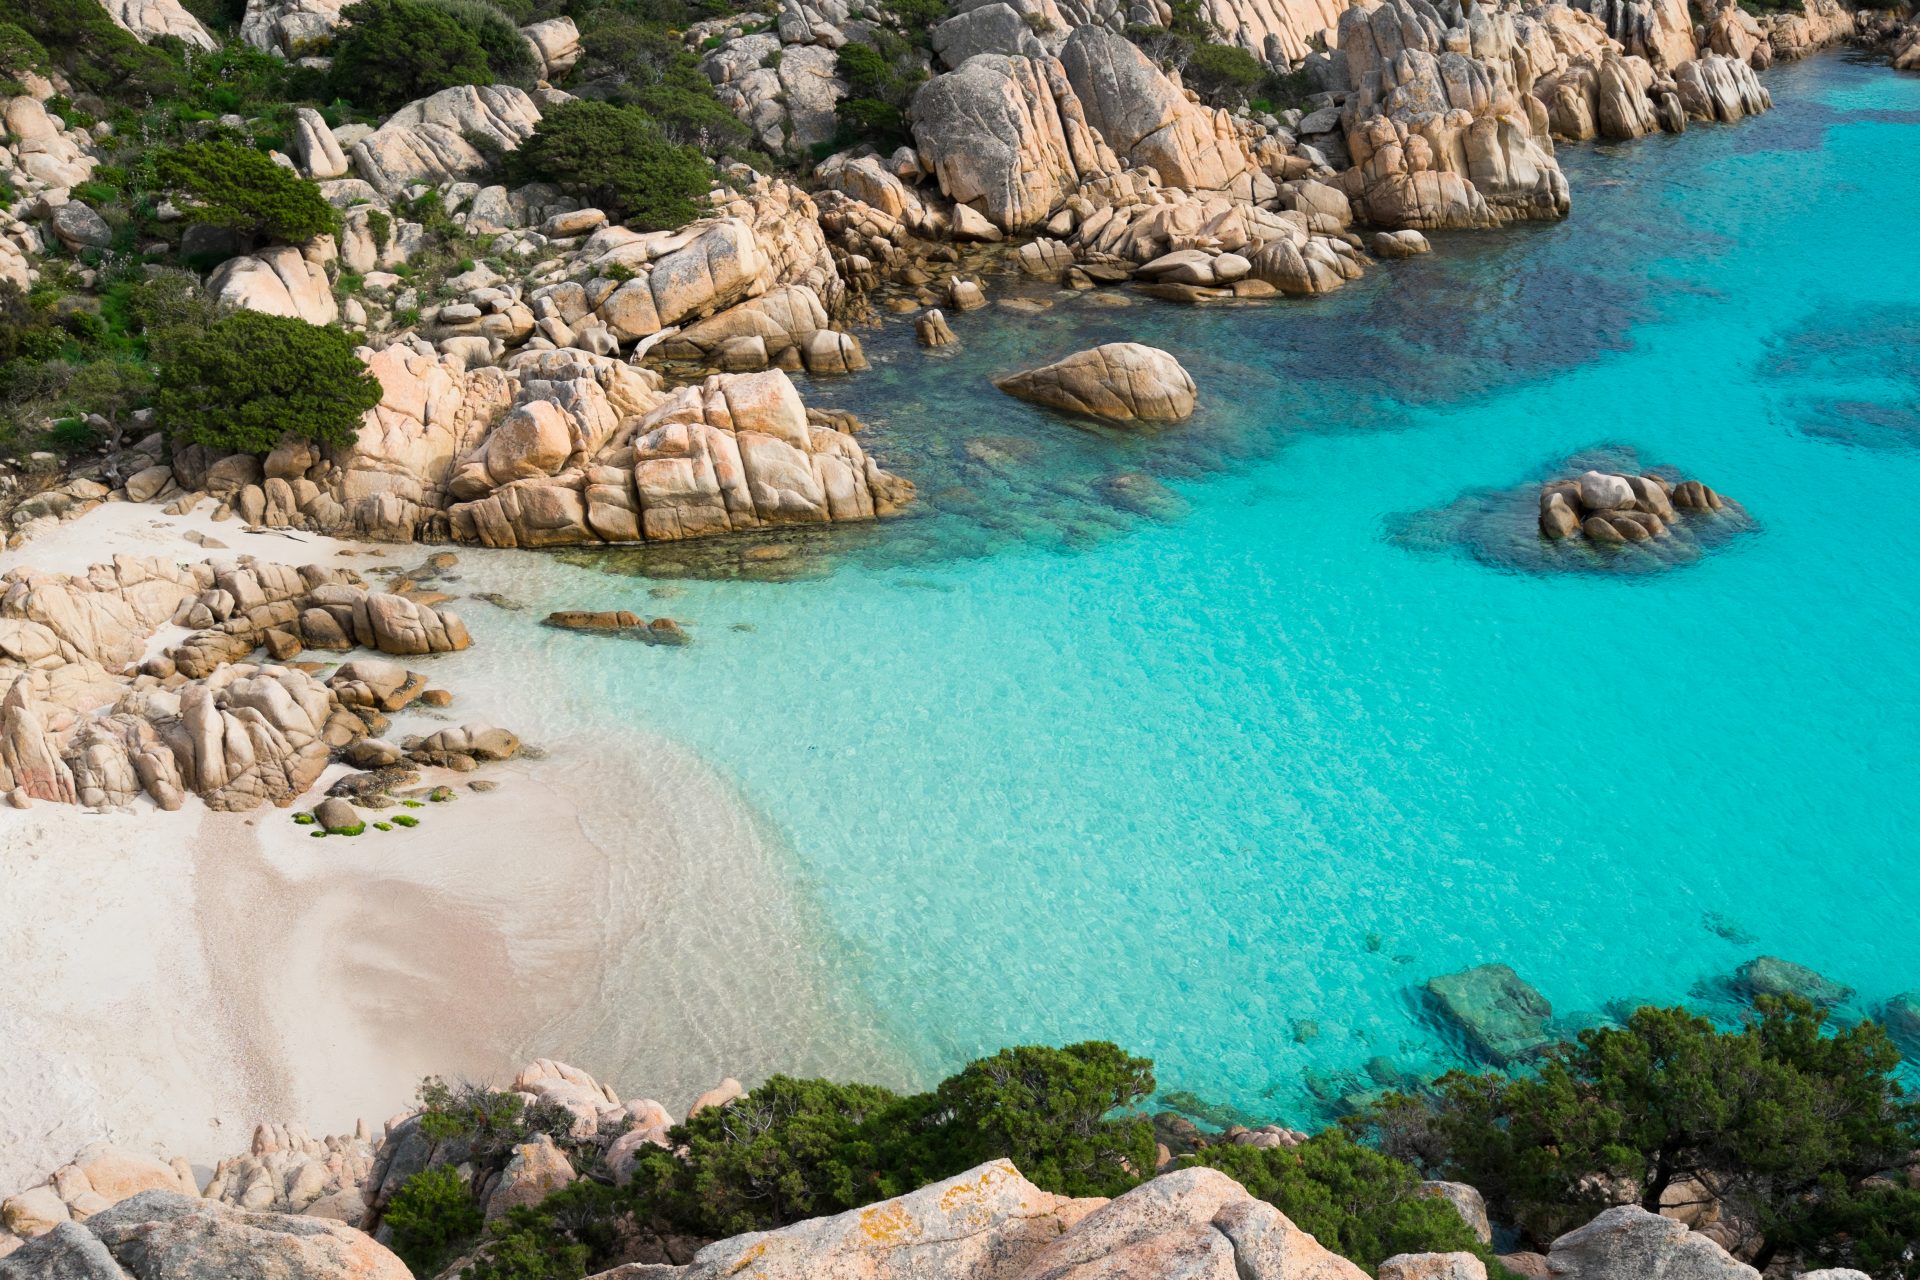 Sardinia, a land of turquoise sea, fantastic sailing, beautiful landscape, art, food & wine